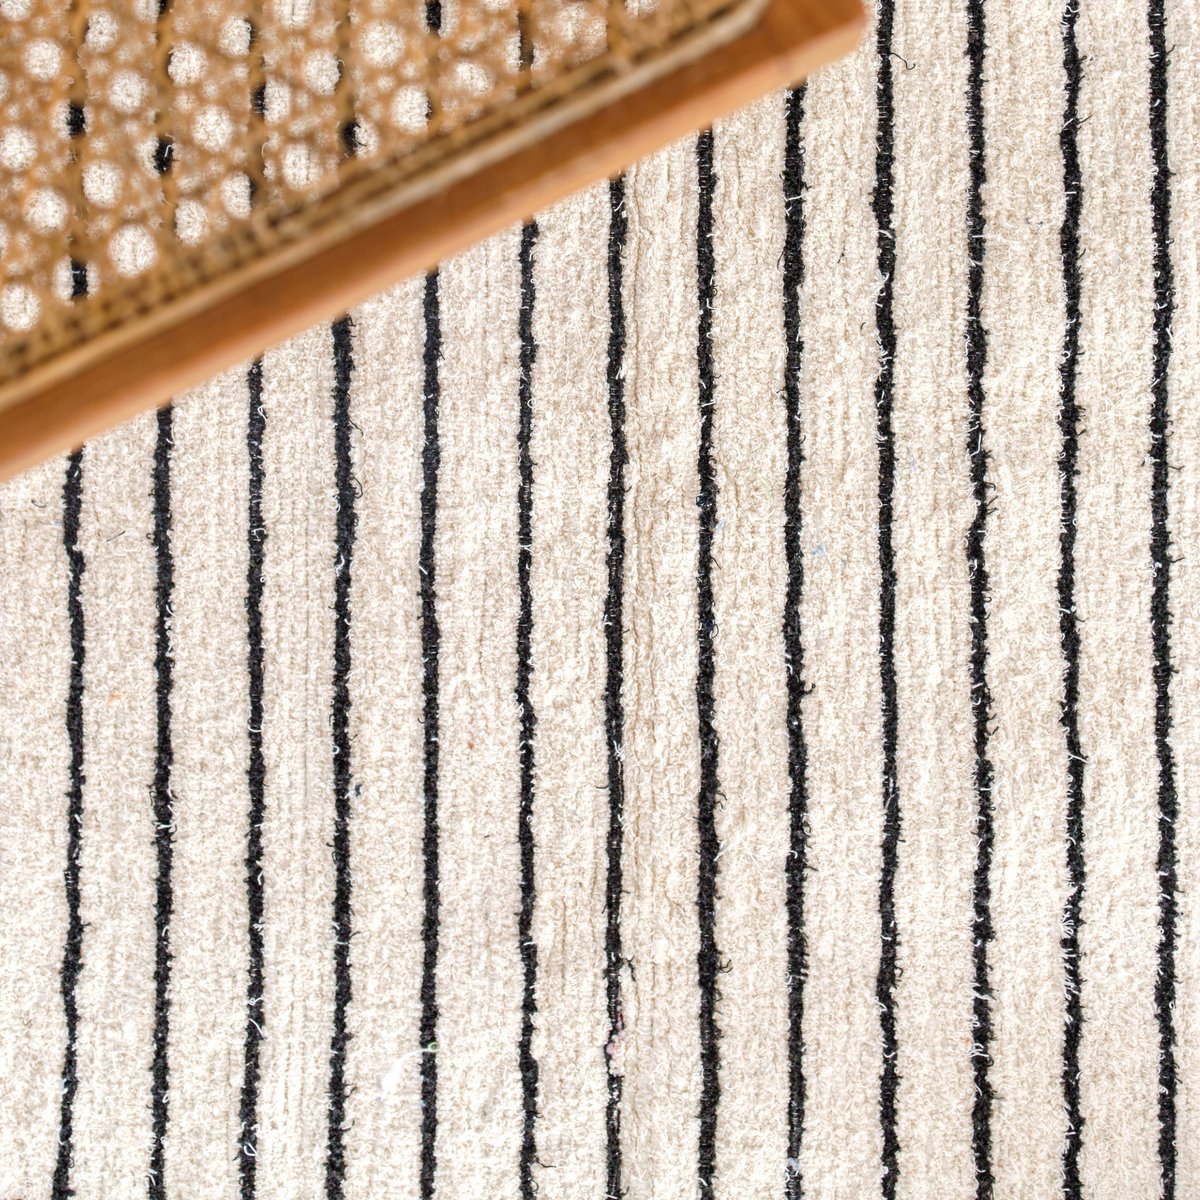 Grand Tapis en Coton Blanc à Rayures Noires 150x120 cm KERTA Tissé Main